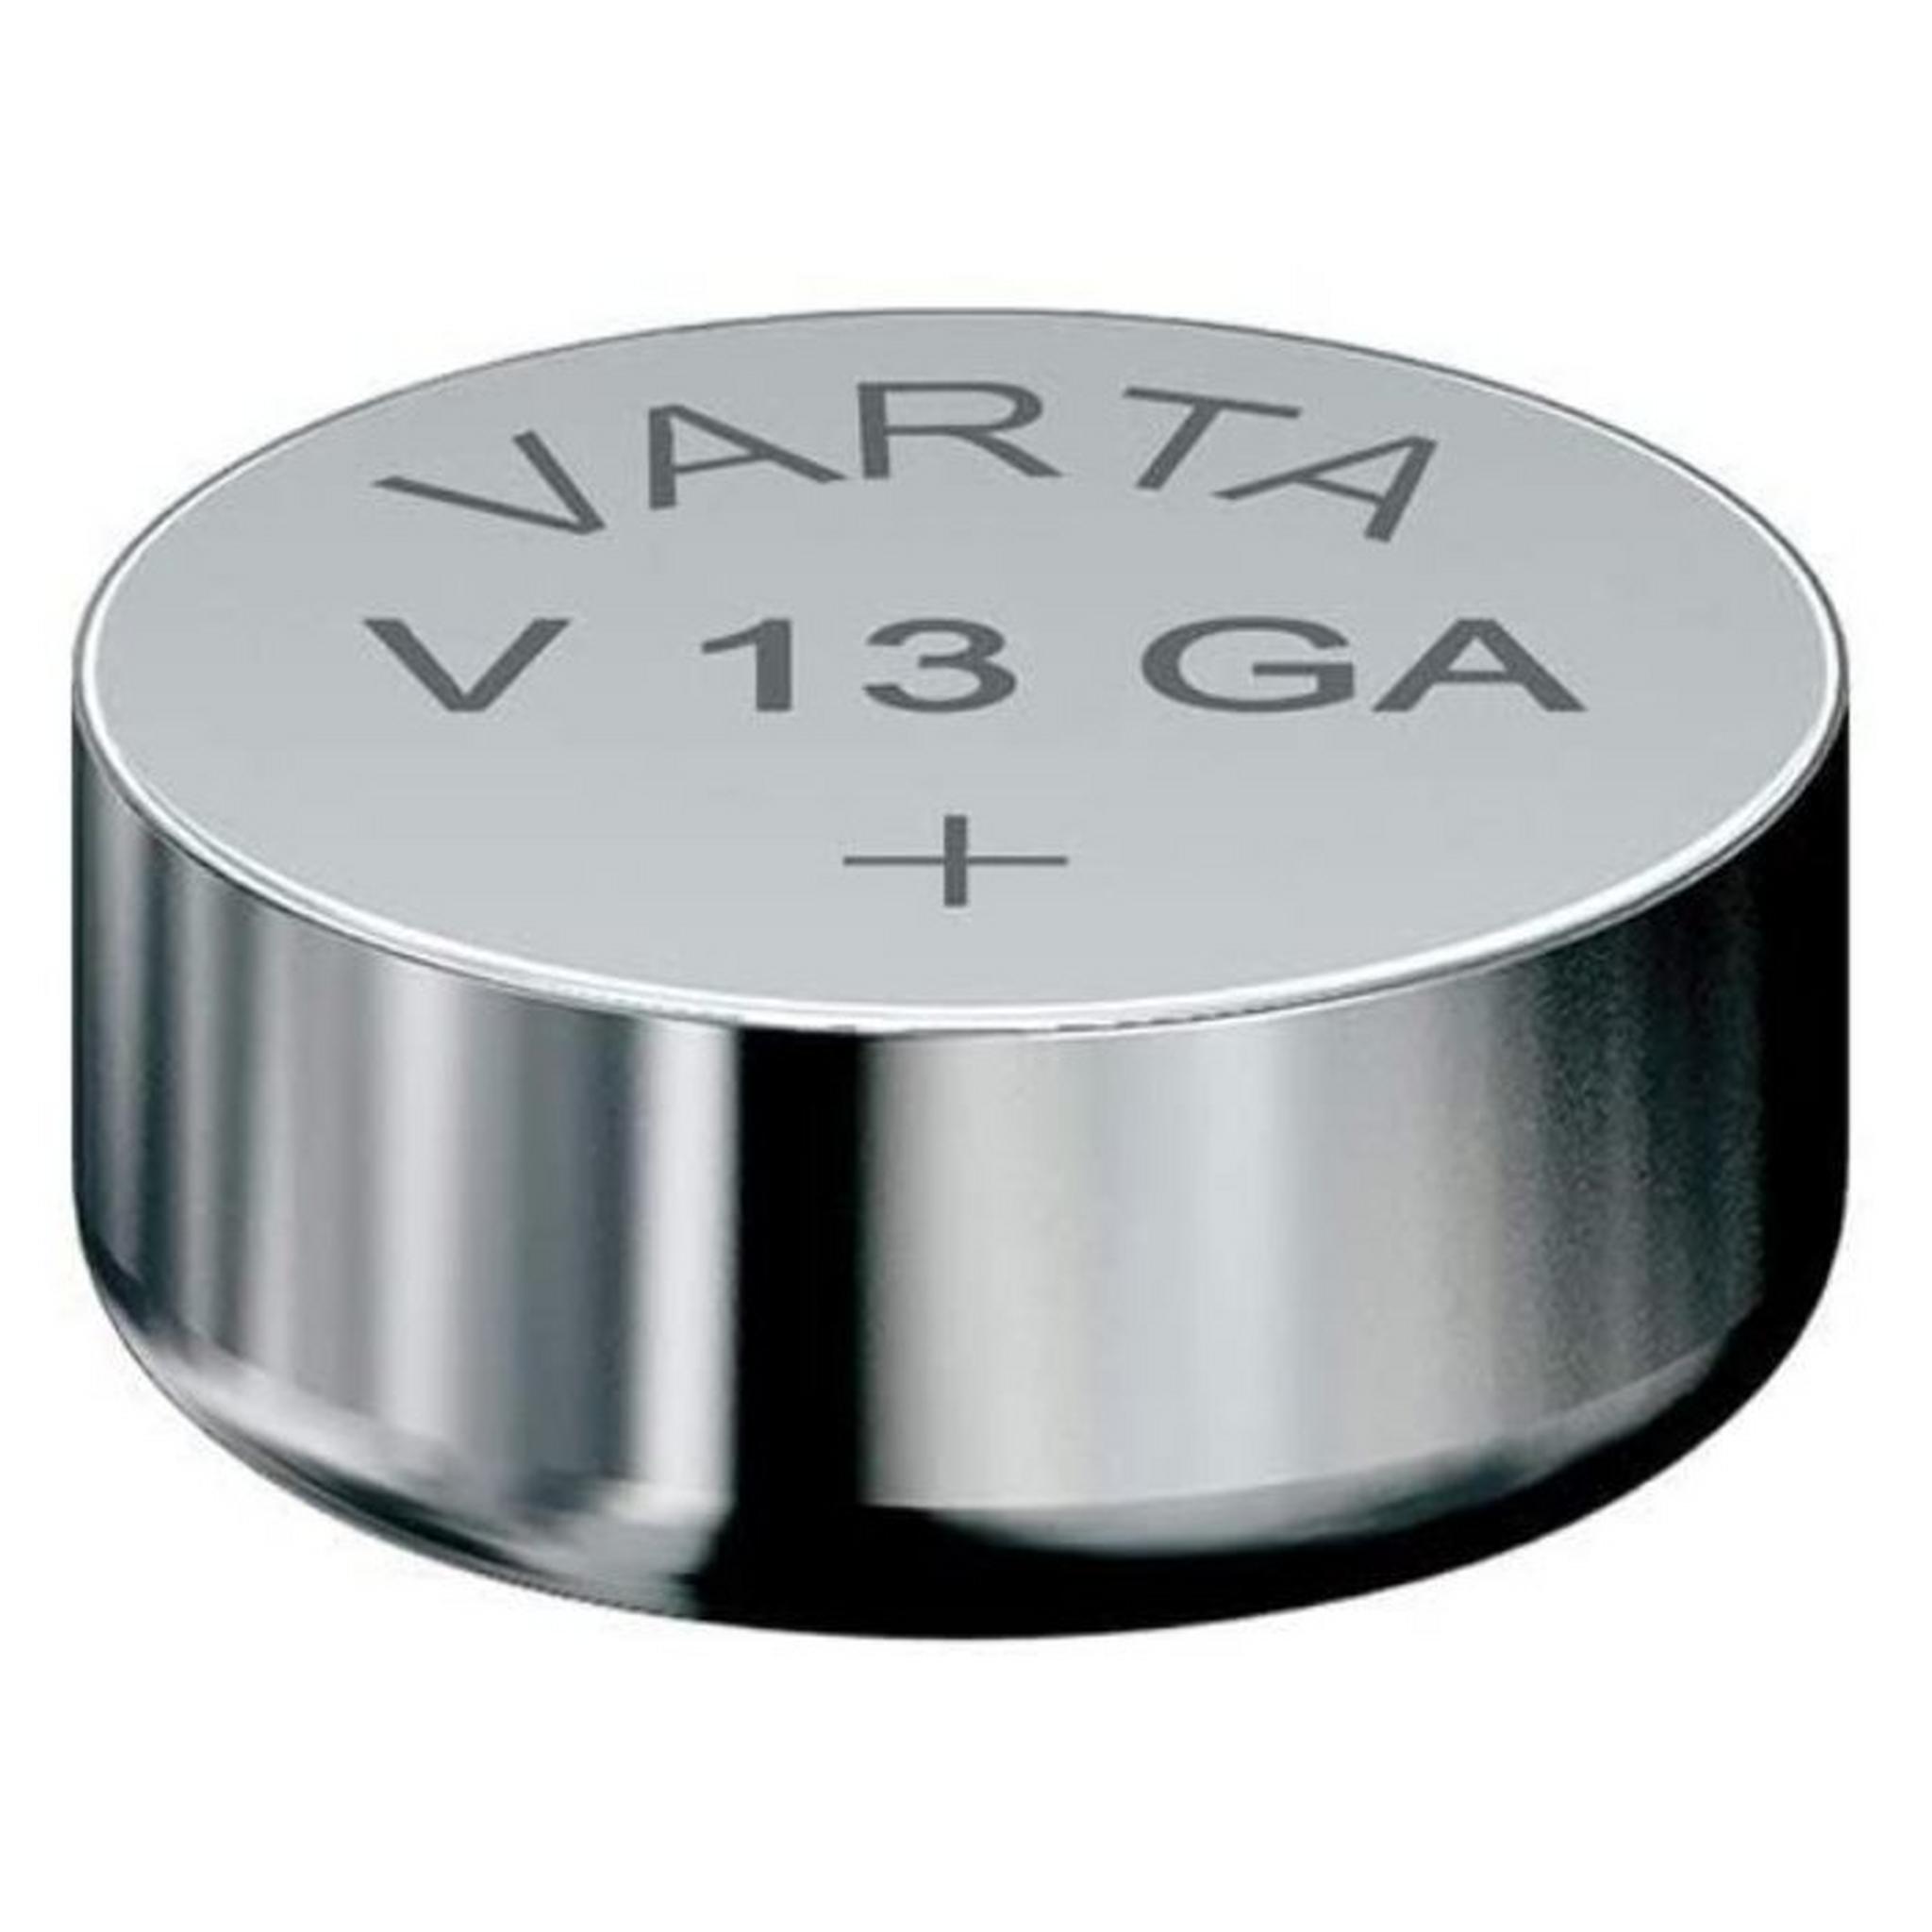 Varta V13GA LR44 Alkaline Battery